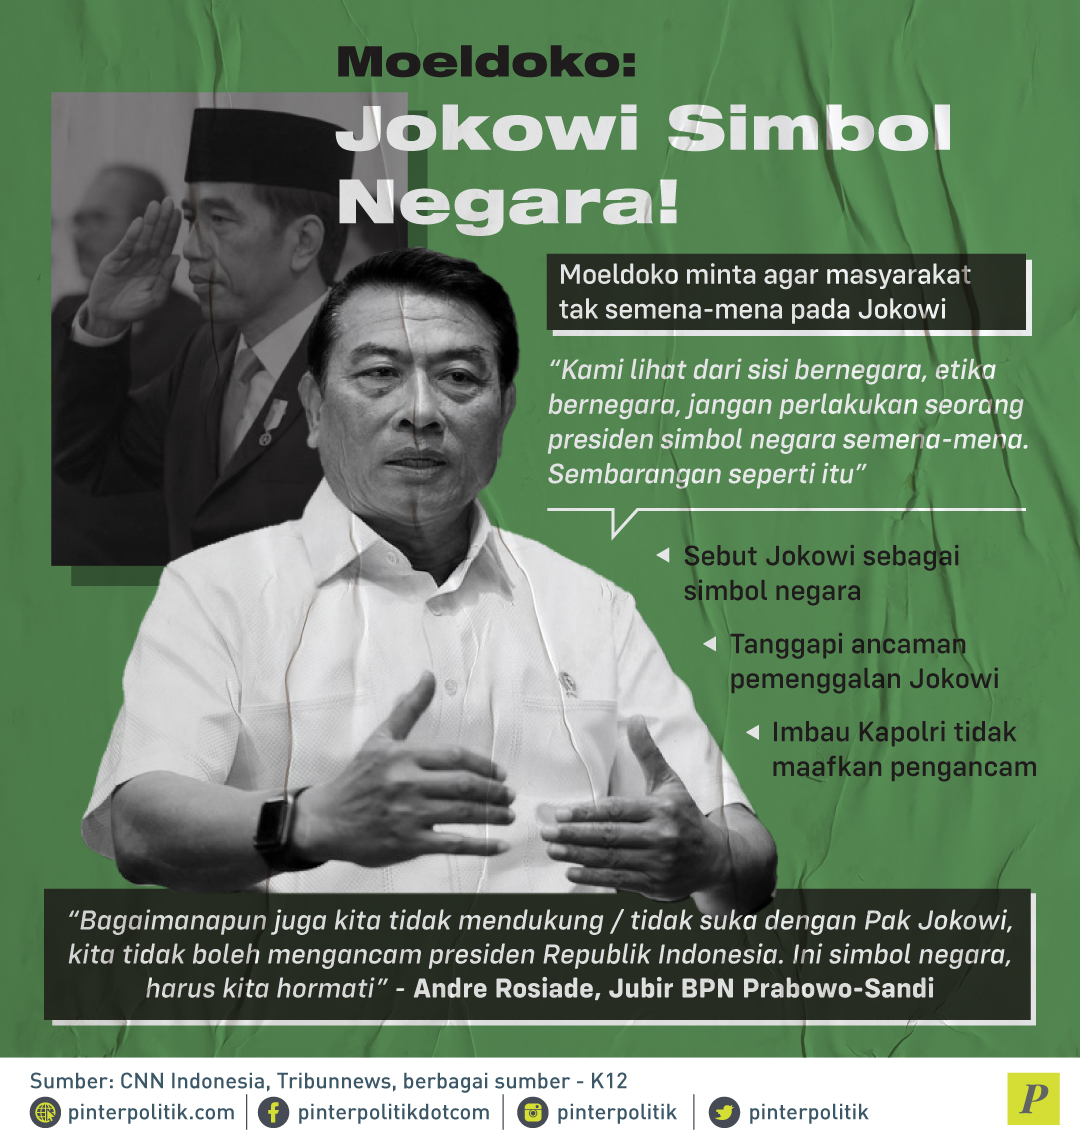 Moeldoko sebut Jokowi sebagai simbol negara